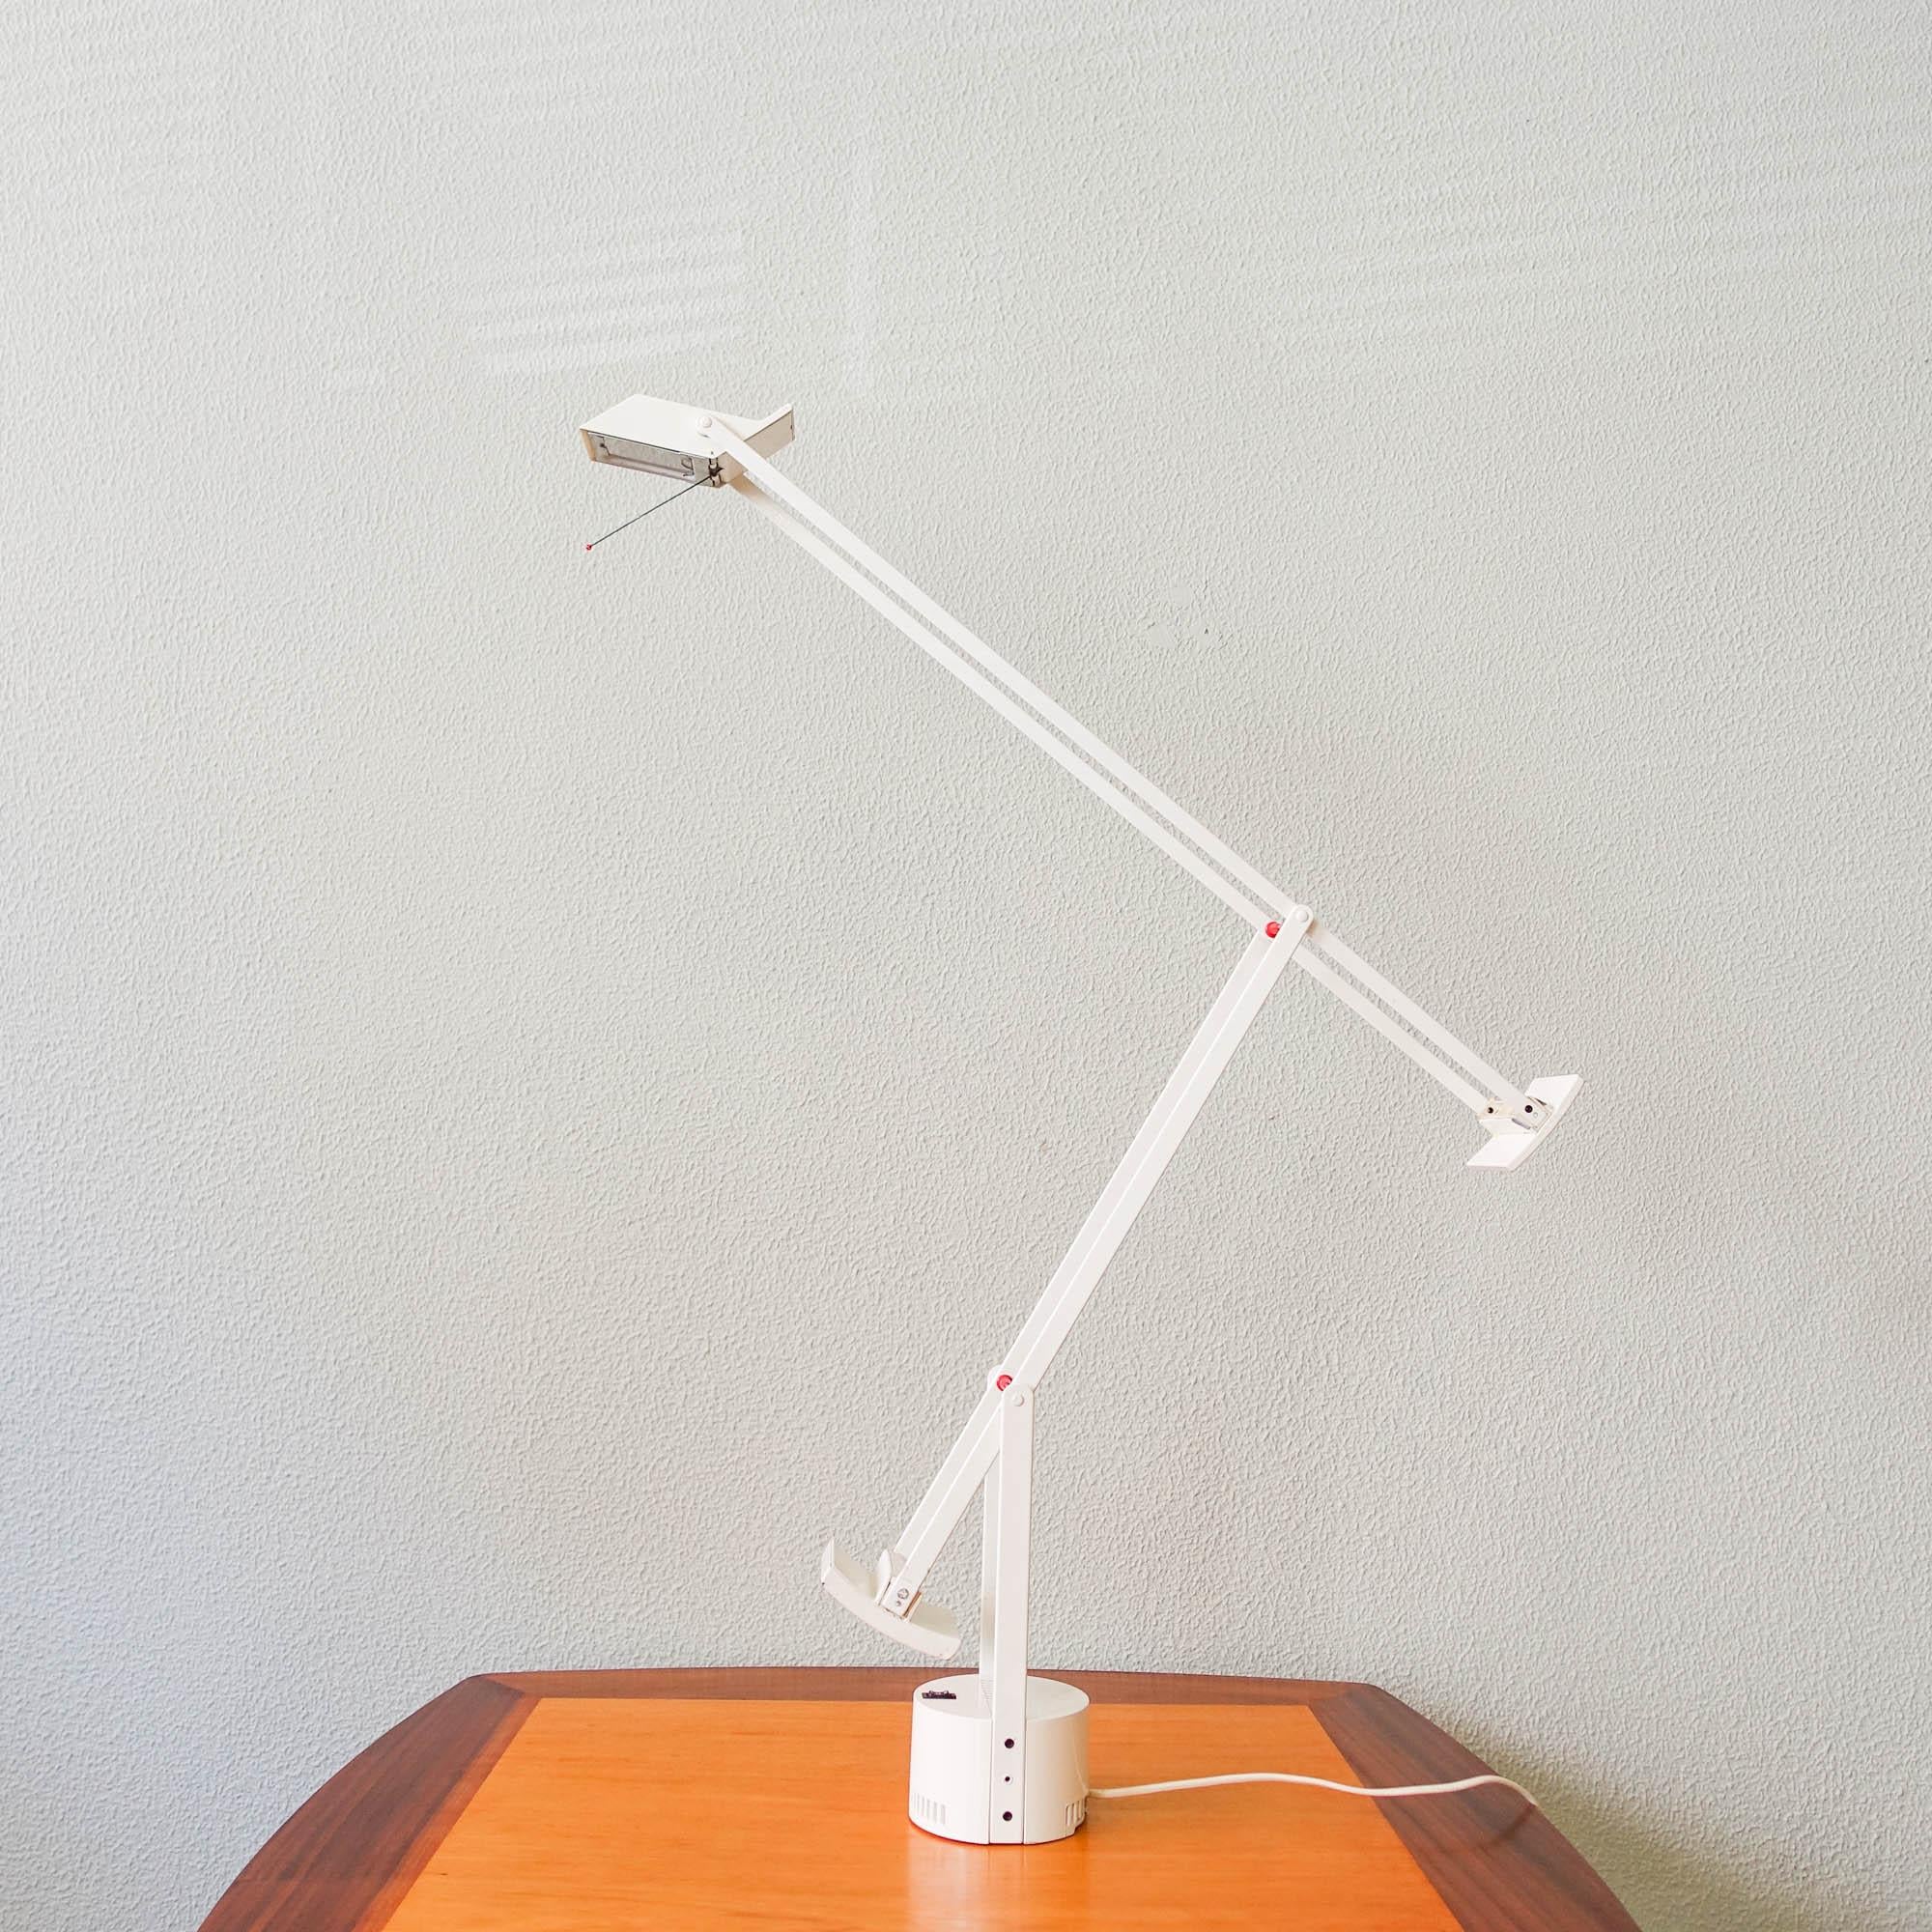 Diese Tischleuchte, Modell Tizio, wurde 1972 von Richard Sapper für Artemide in Italien entworfen. Die 1972 eingeführte Lampe ist mit zwei Gegengewichten ausgestattet, die es dem Benutzer ermöglichen, das Licht nach Belieben zu lenken.
Die Lampe